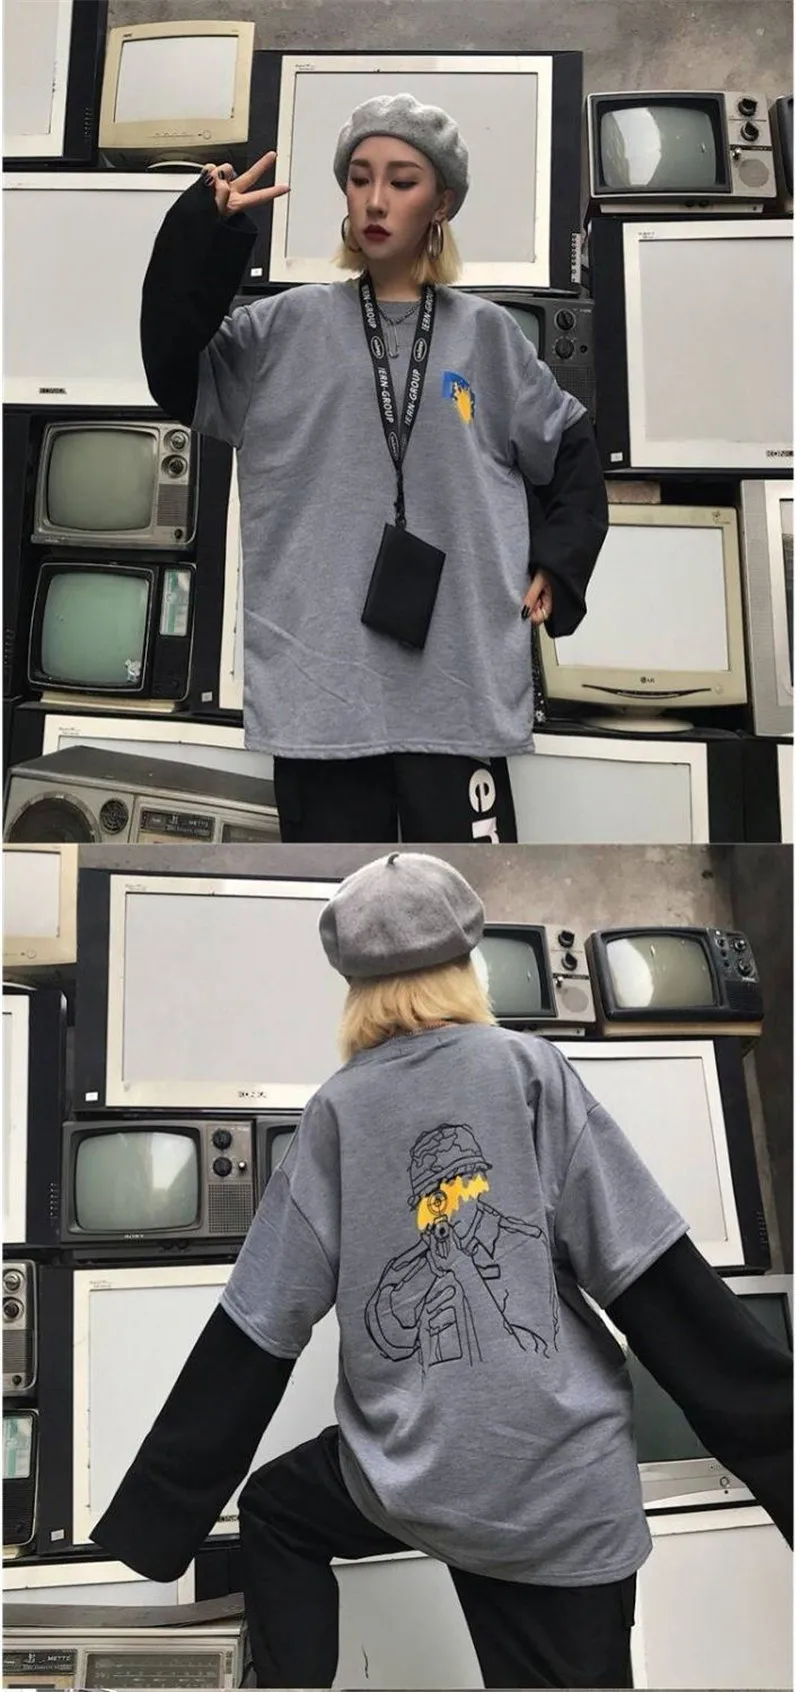 Япония Харадзюку Черные Серые футболки для мужчин и женщин повседневные хип хоп топы футболки поддельные из двух частей длинный рукав свободная футболка уличная Женская